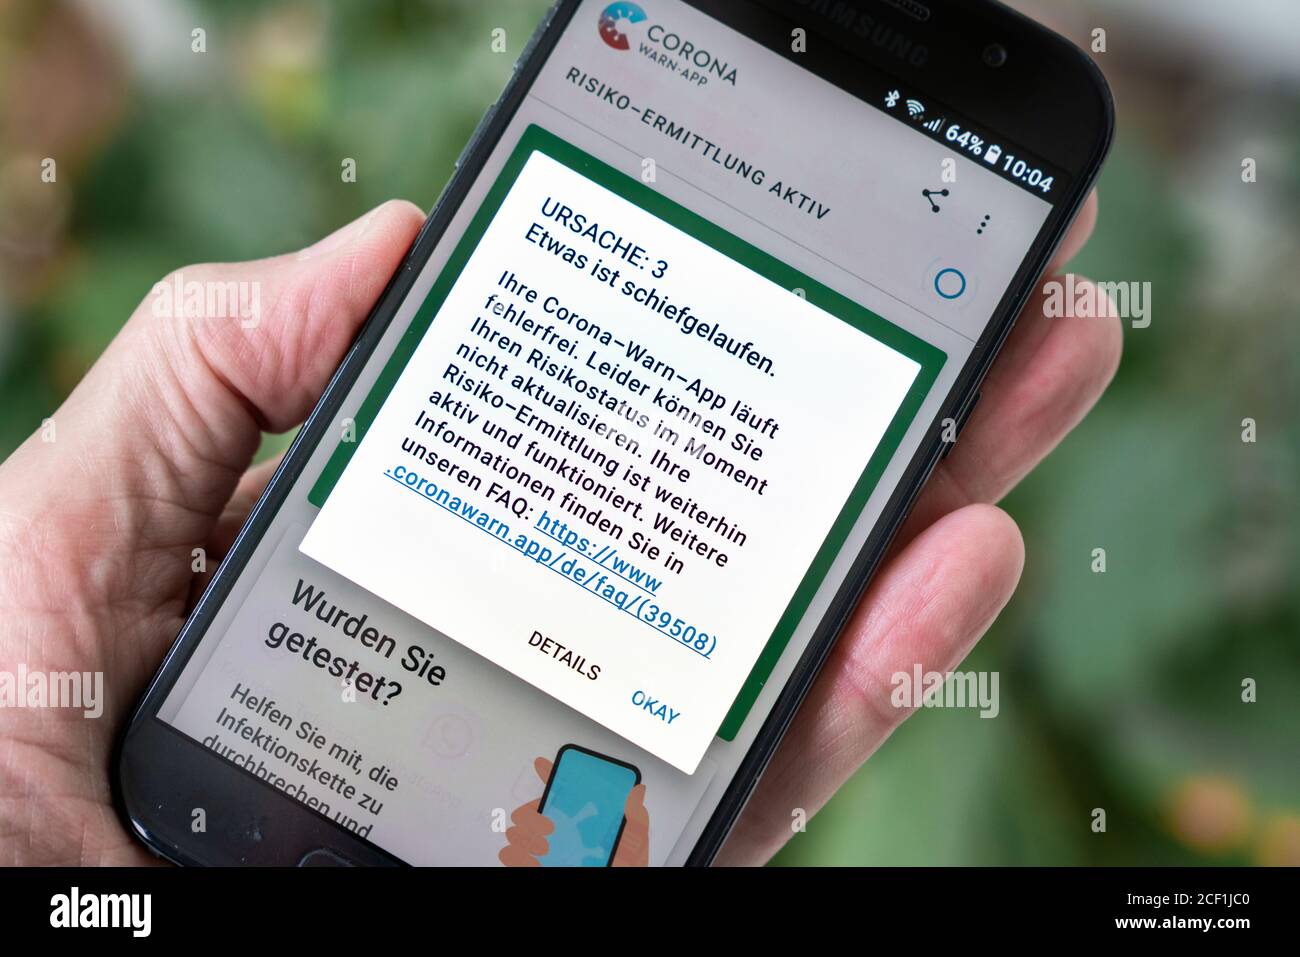 Fehlermeldung der Corona-Warn-App auf einem Smartphone. Sie ist seit dem 16.6.2020 verfügbar und zeigt eine eventuelle Risikobegegnung mit Coronainfizierten an. Foto vom 03.09.2020. Stock Photo